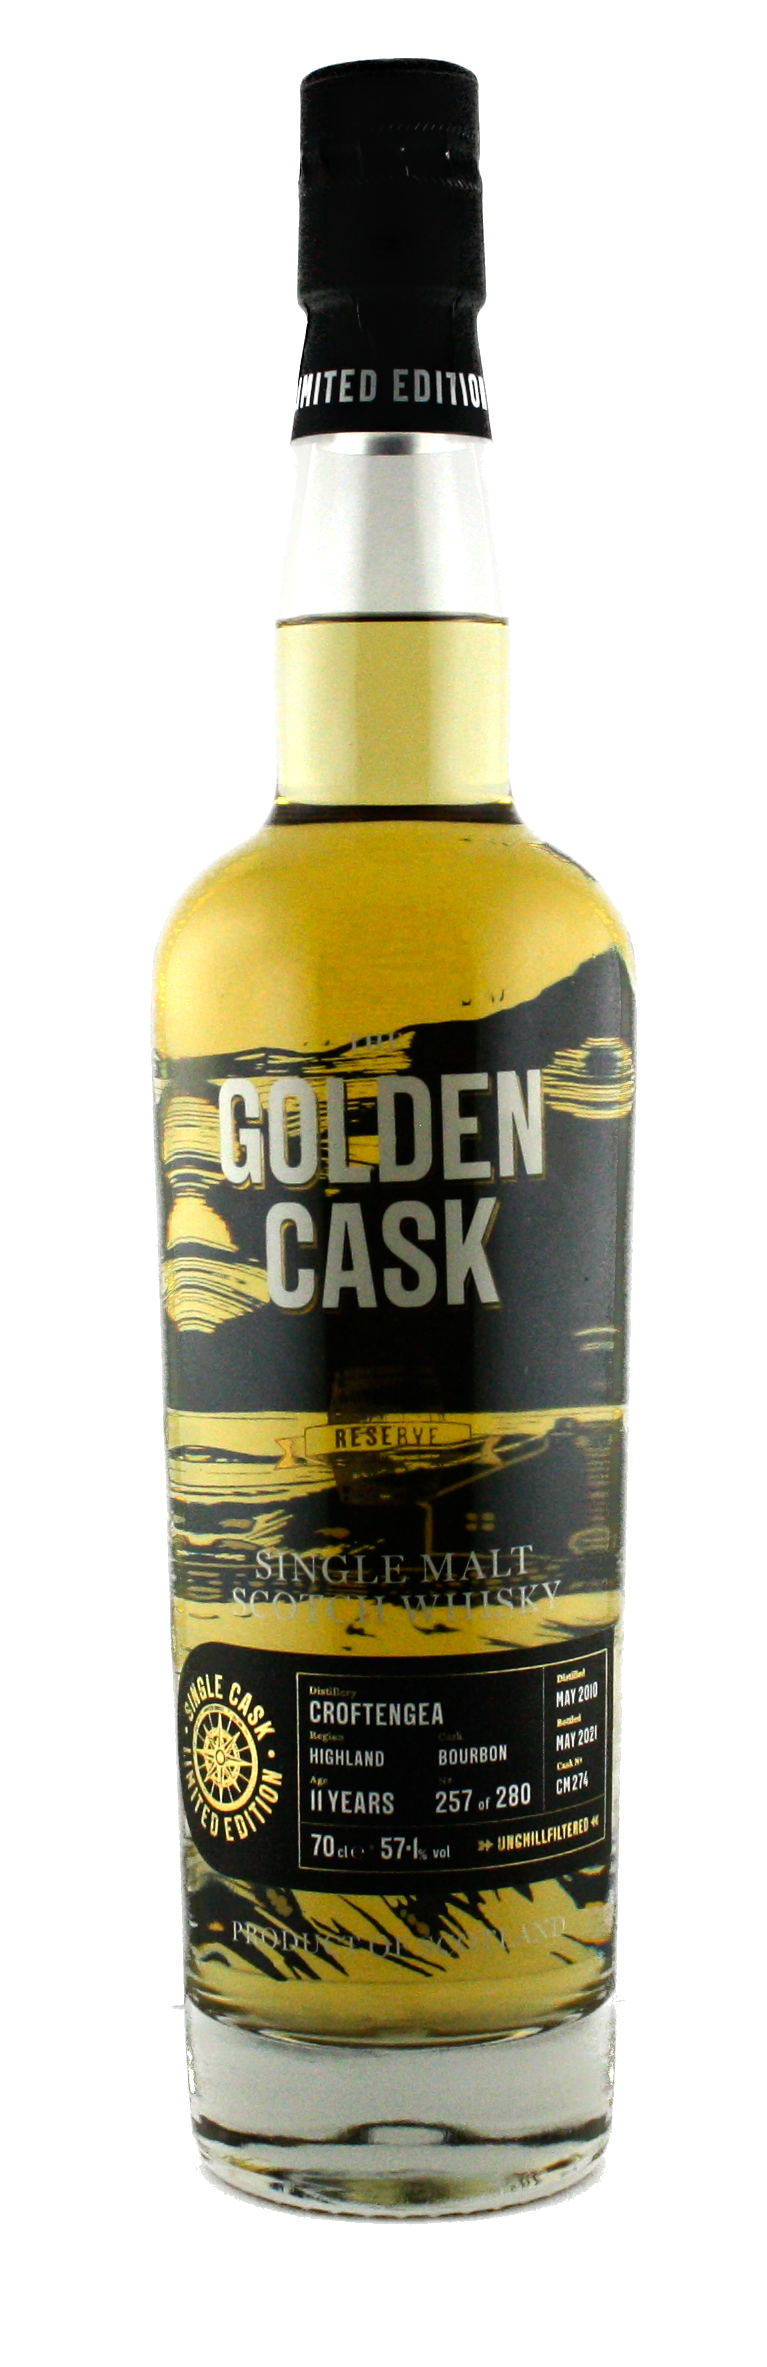 The Golden Cask Croftengea 11 Years